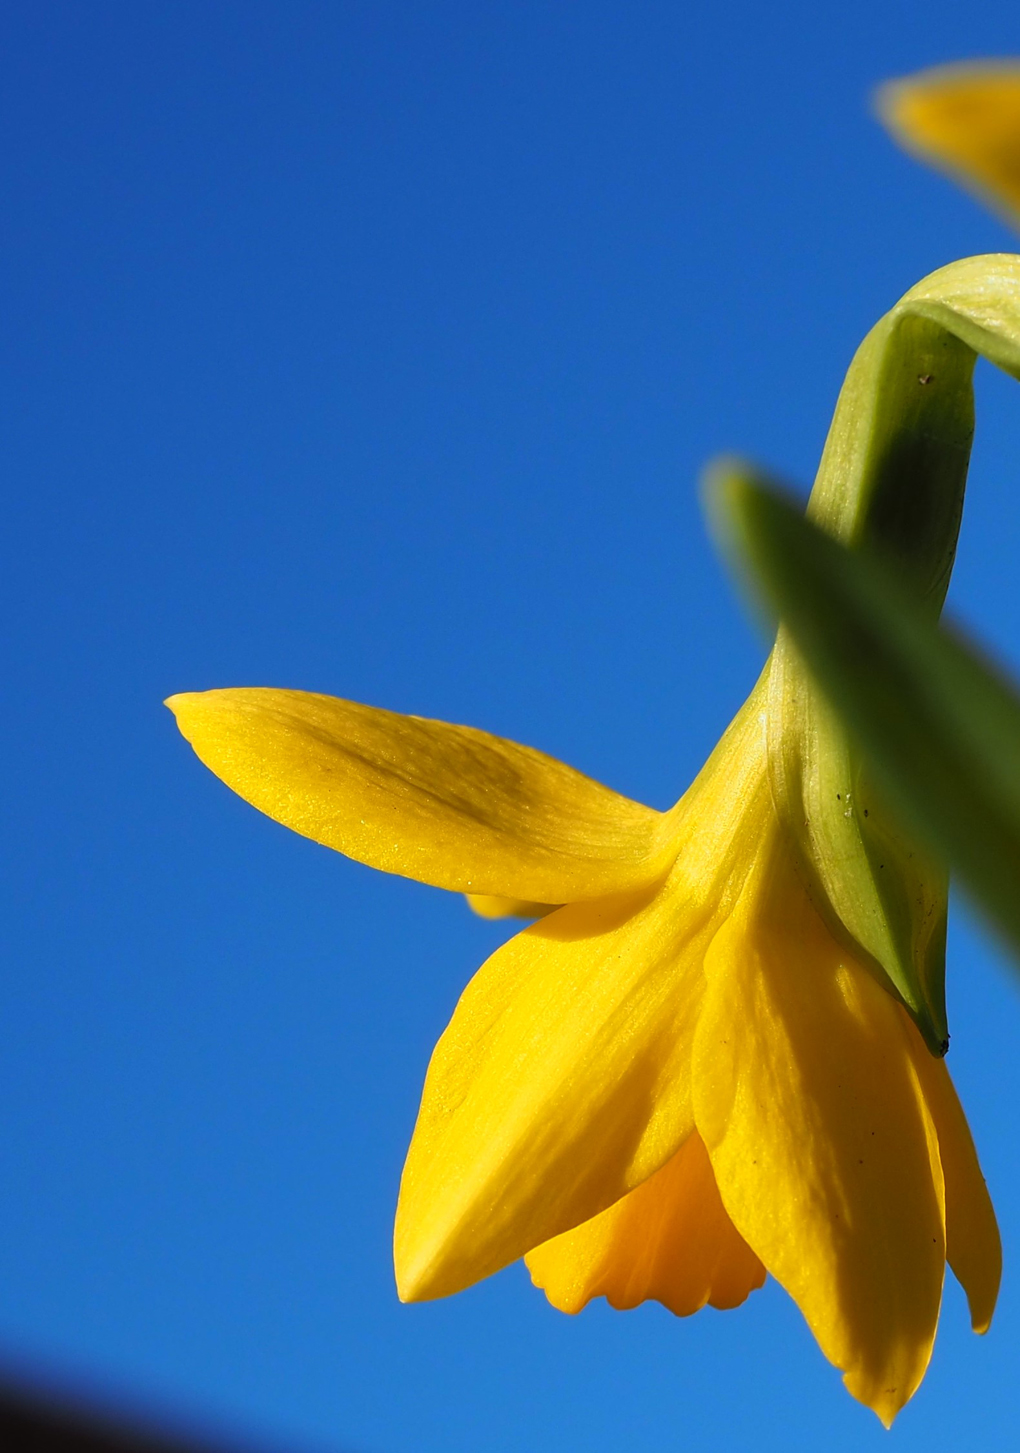 Deep Blue Sky and Yellow Mini Daffodil taken 27-Feb-2022